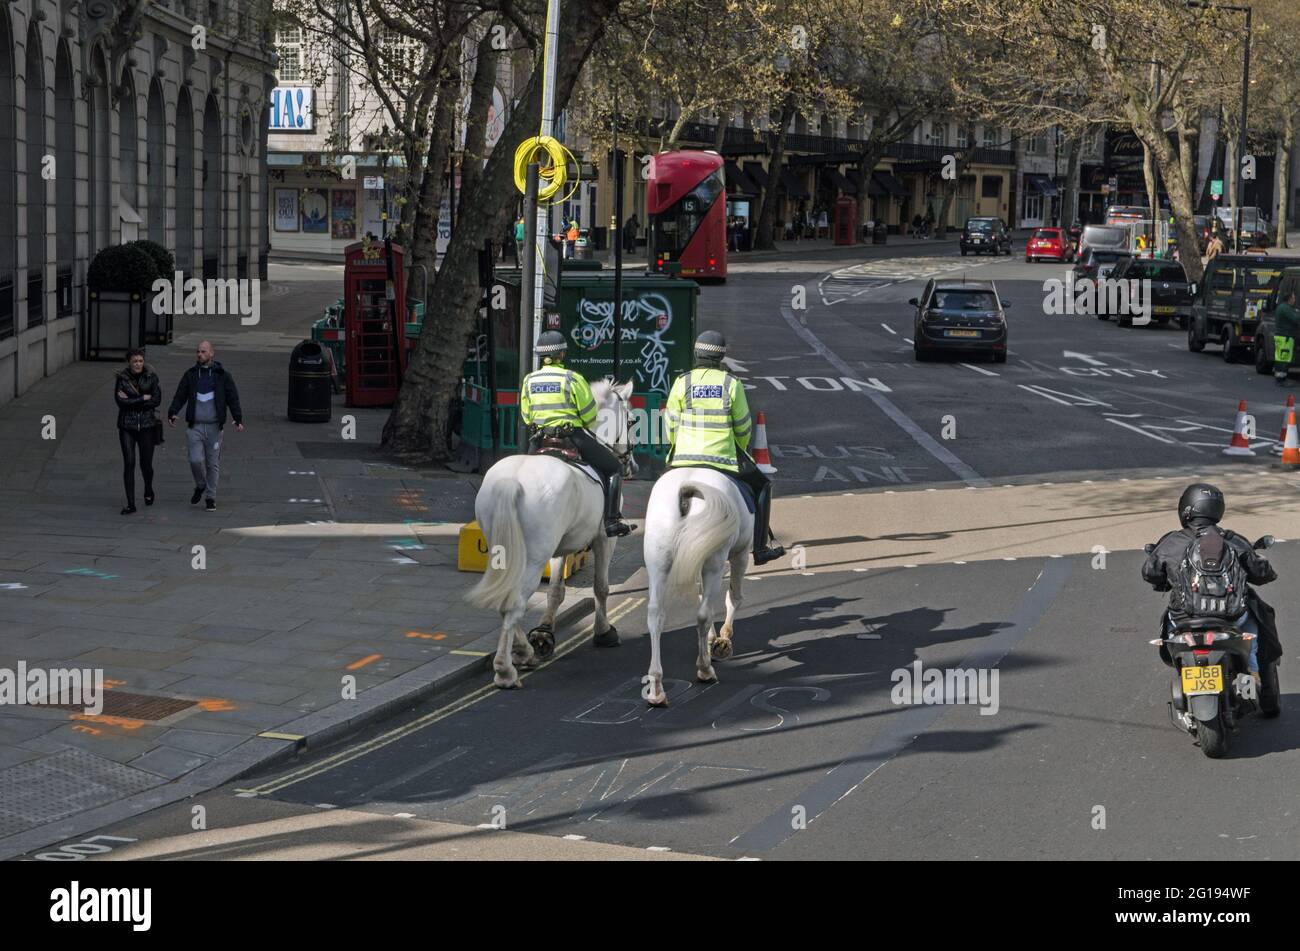 Londra, Regno Unito - 16 aprile 2021: Due cavalli bianchi della polizia sono cavalcati da ufficiali montati intorno al marchio Aldwych a Westminster, nel centro di Londra su a s. Foto Stock